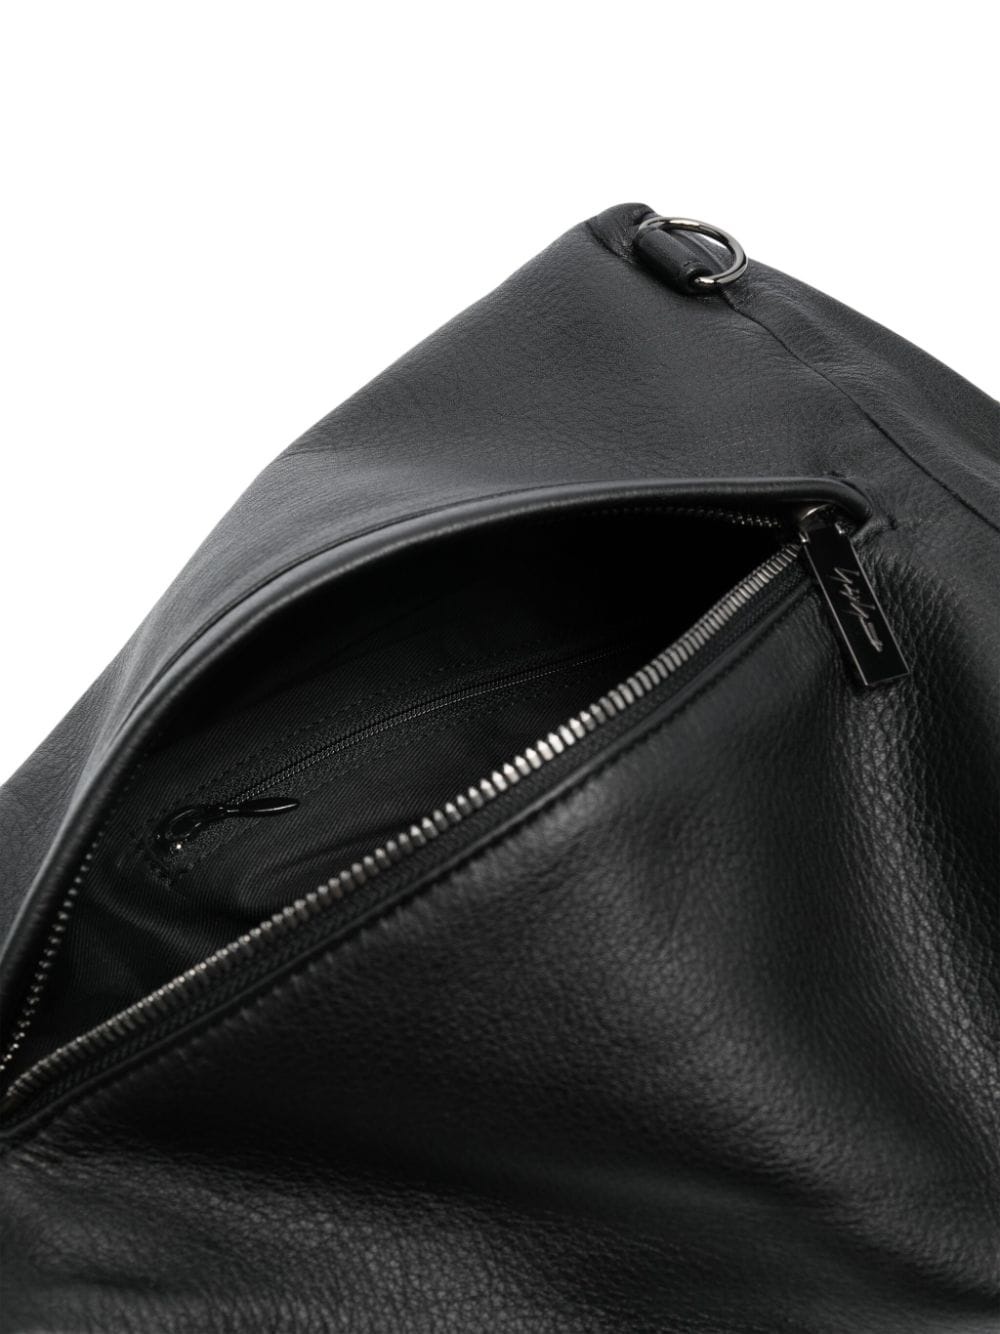 Y leather crossbody bag - 5